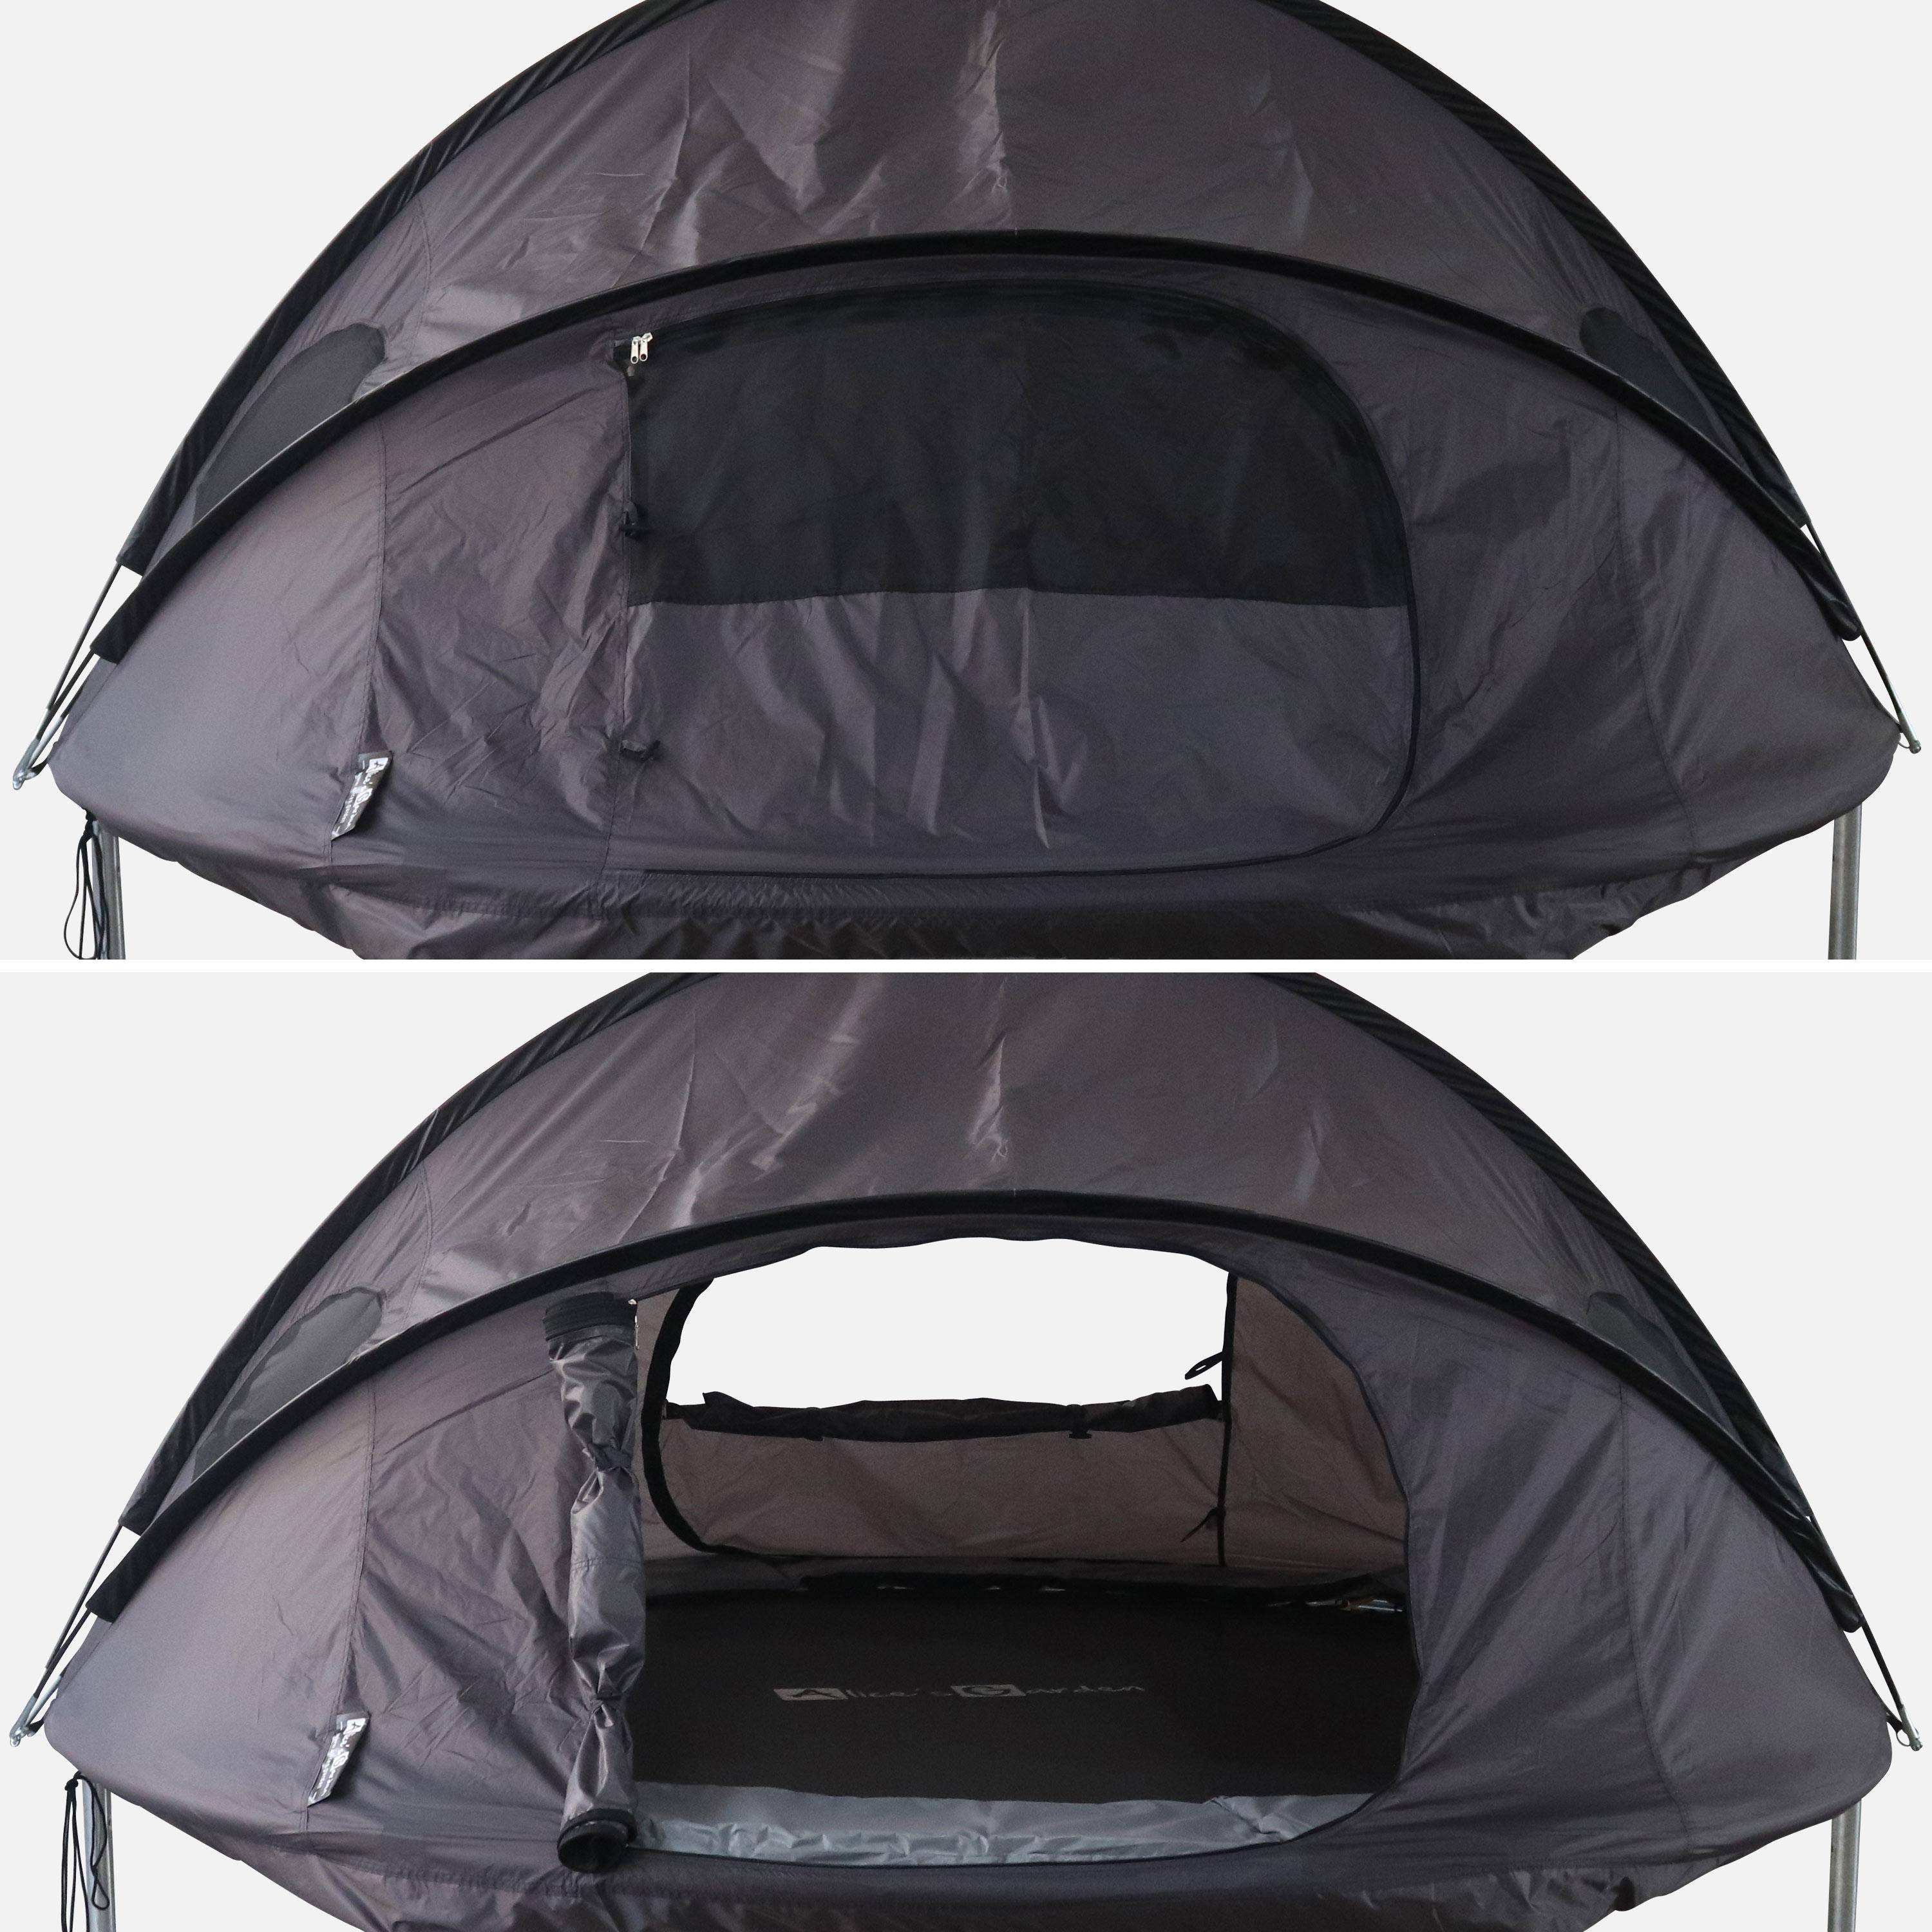 Trampolin 250cm grau mit Zubehörpaket + Campingzelt mit Tragetasche - Pluto XXL Domus,sweeek,Photo6